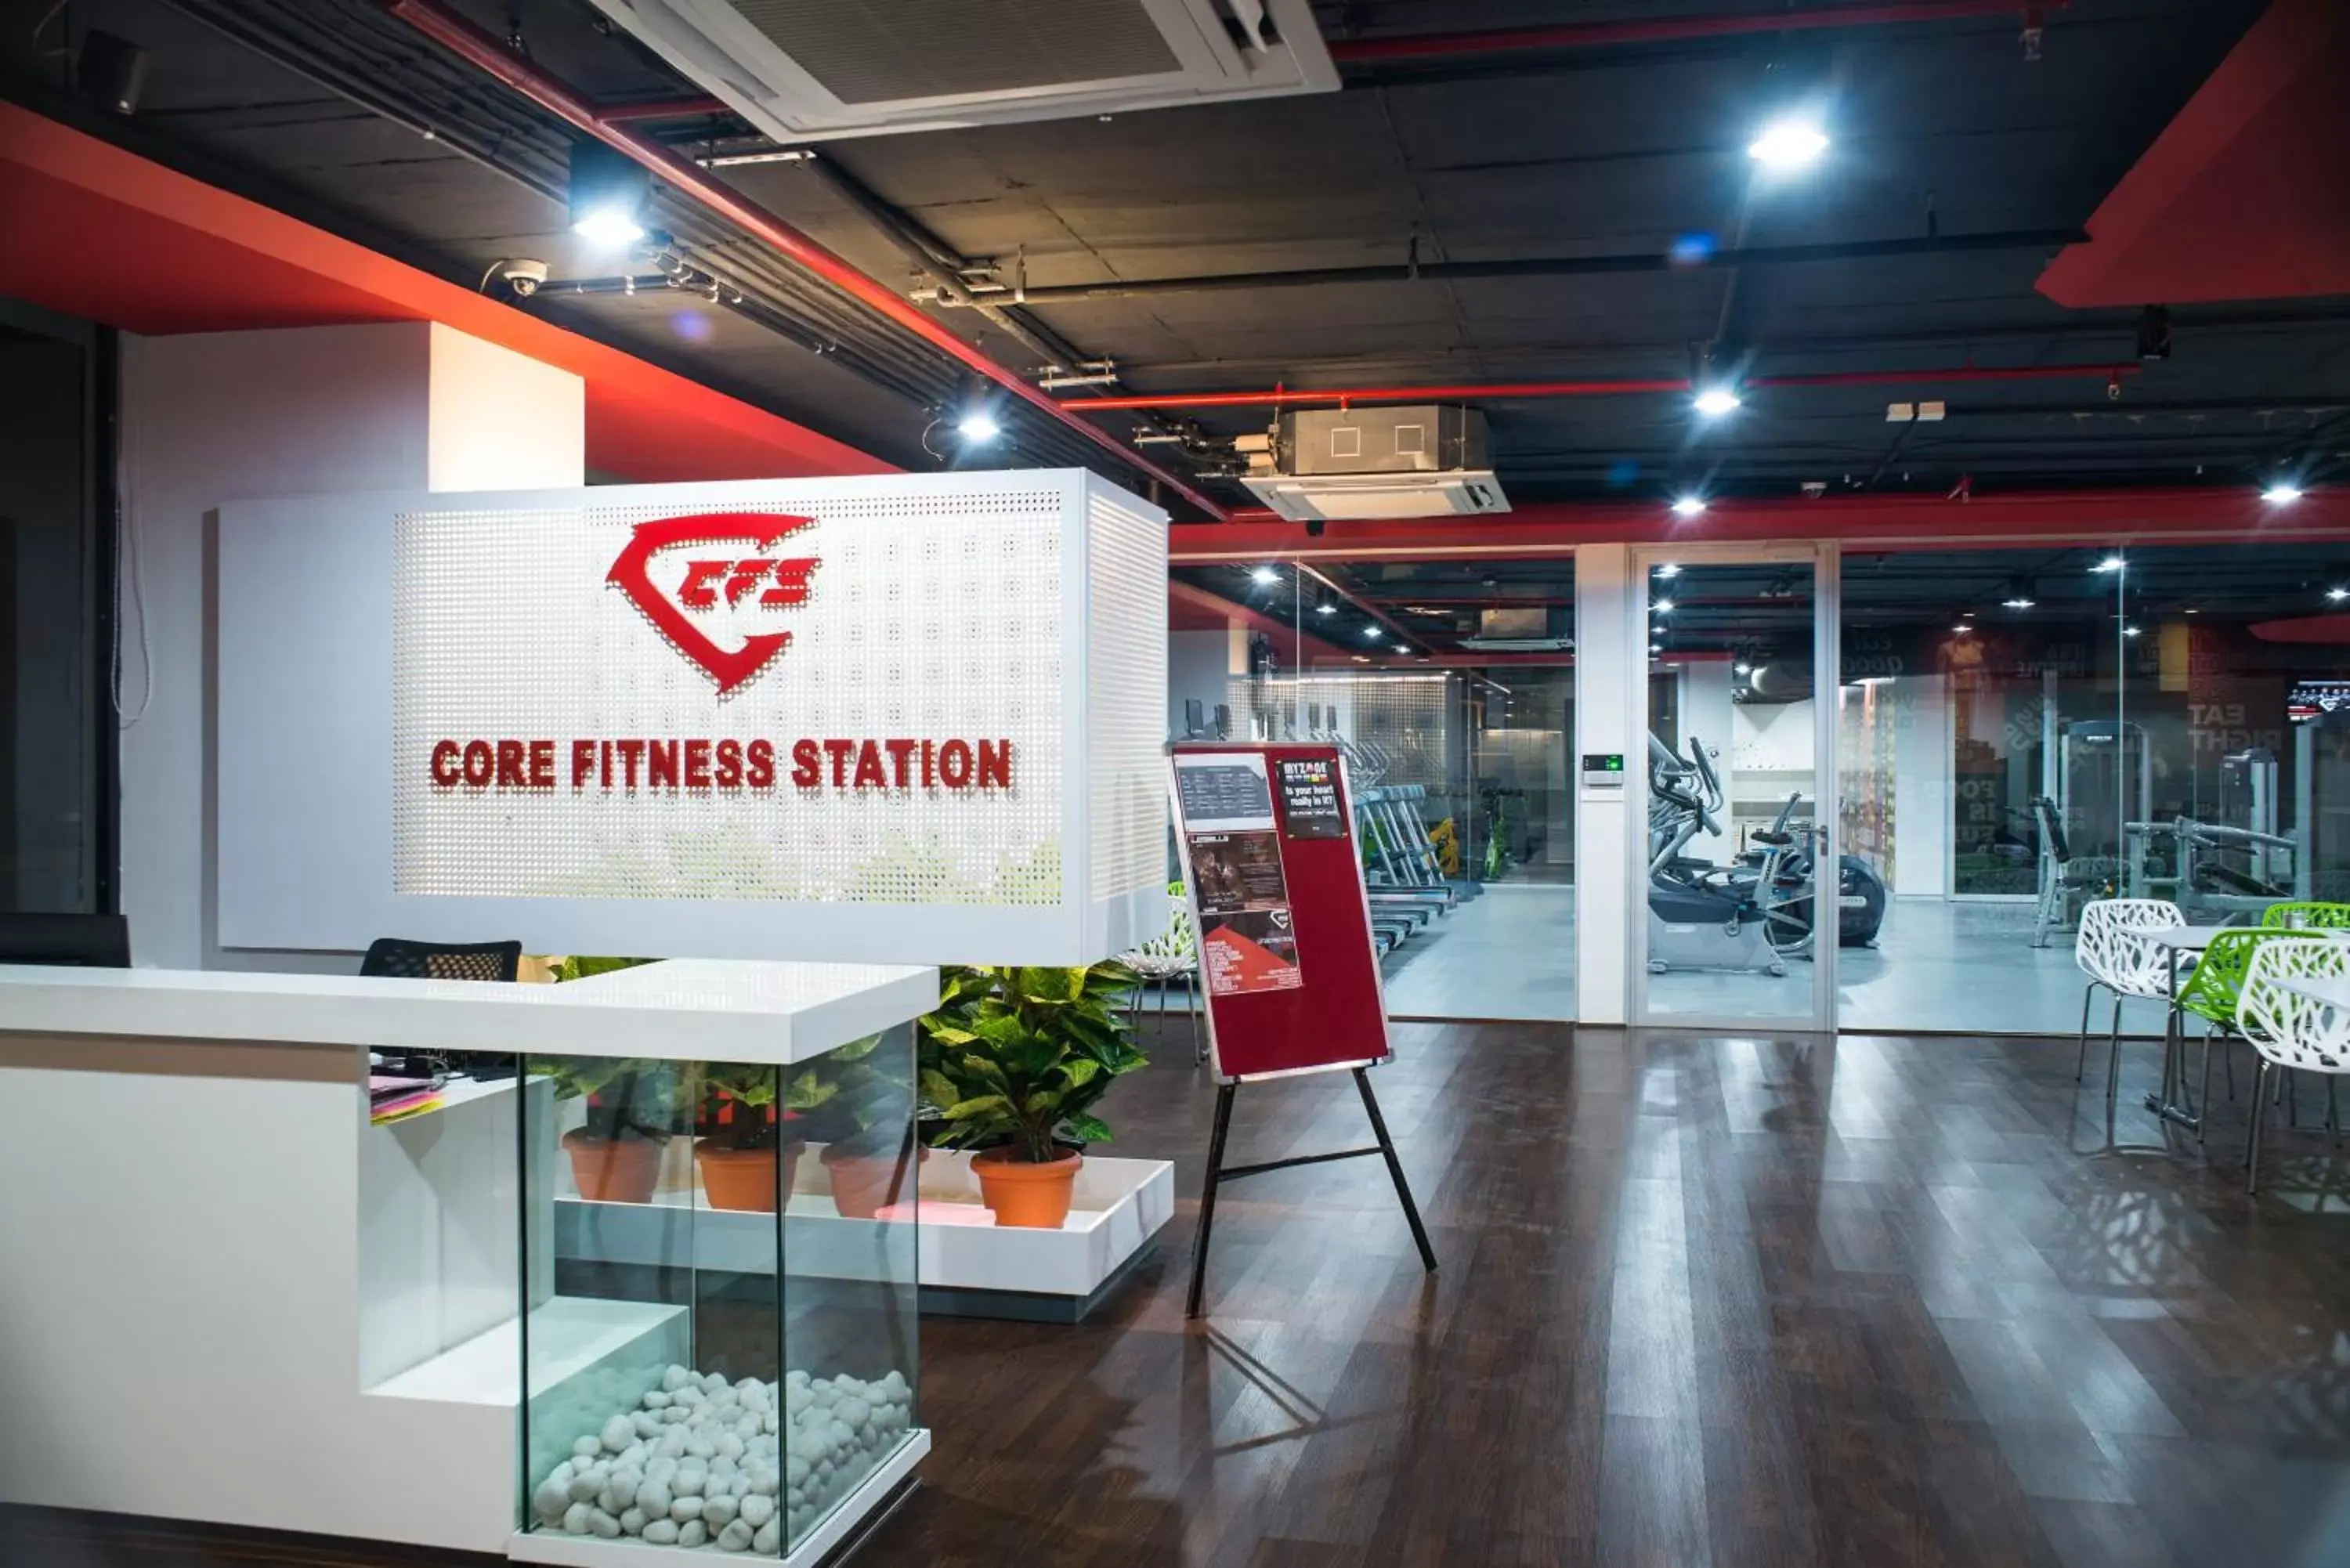 Fitness centre/facilities in Daspalla Hyderabad